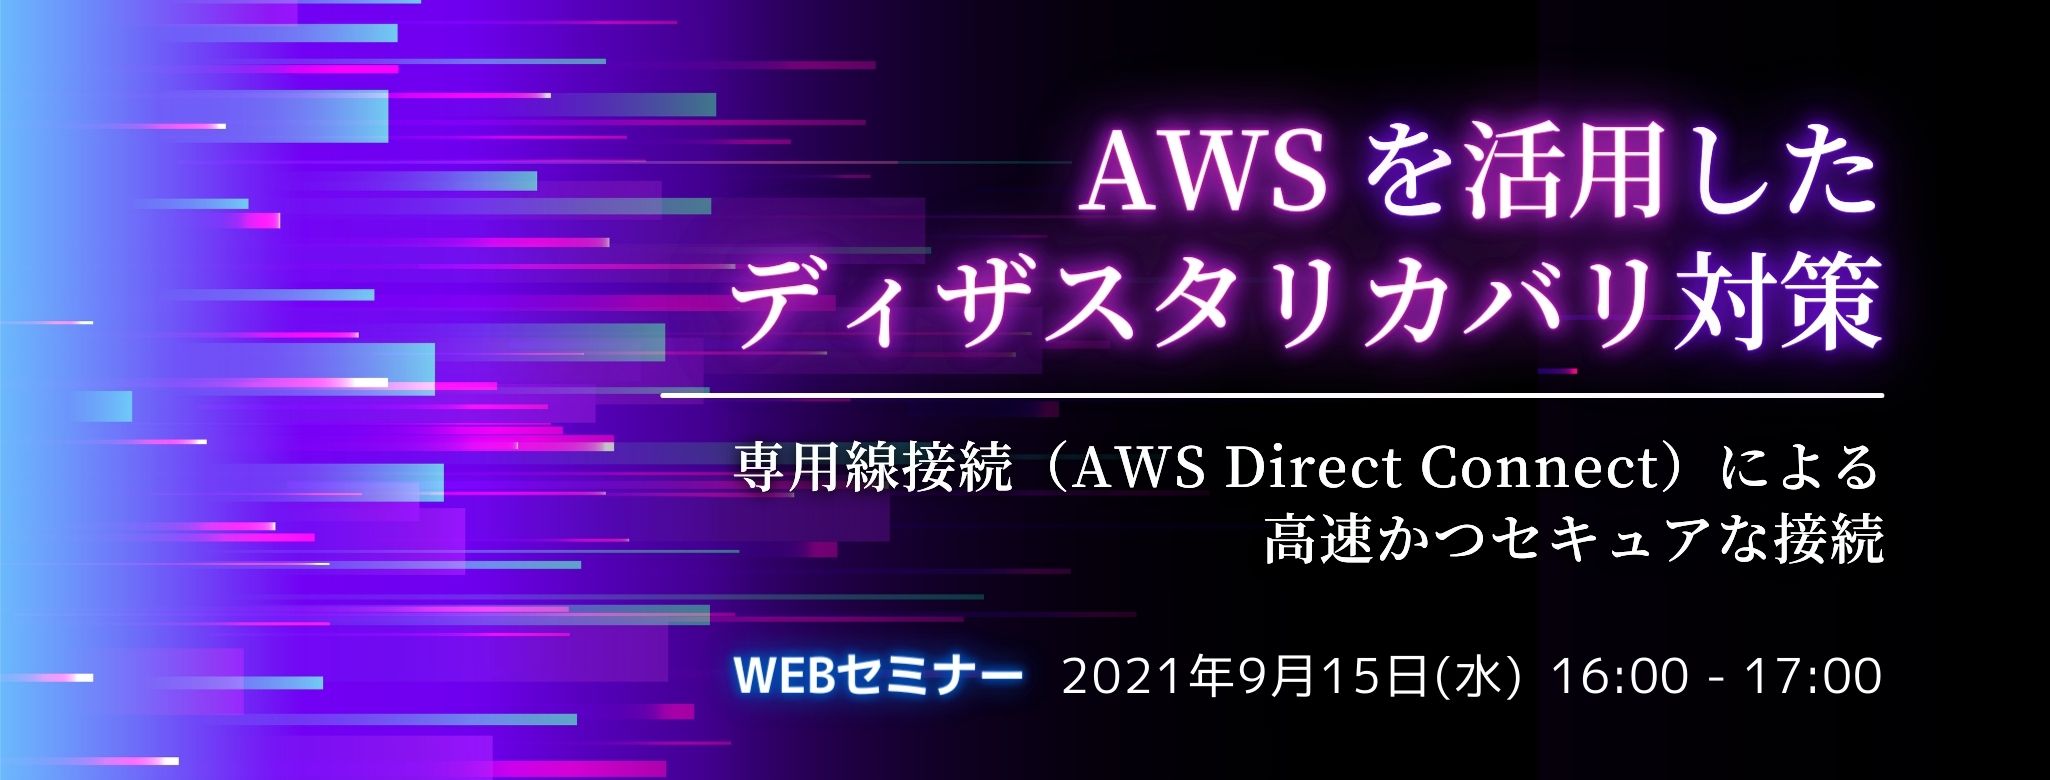  AWSを活用した ディザスタリカバリ対策、専用線接続（AWS Direct Connect）による高速かつセキュアな接続 